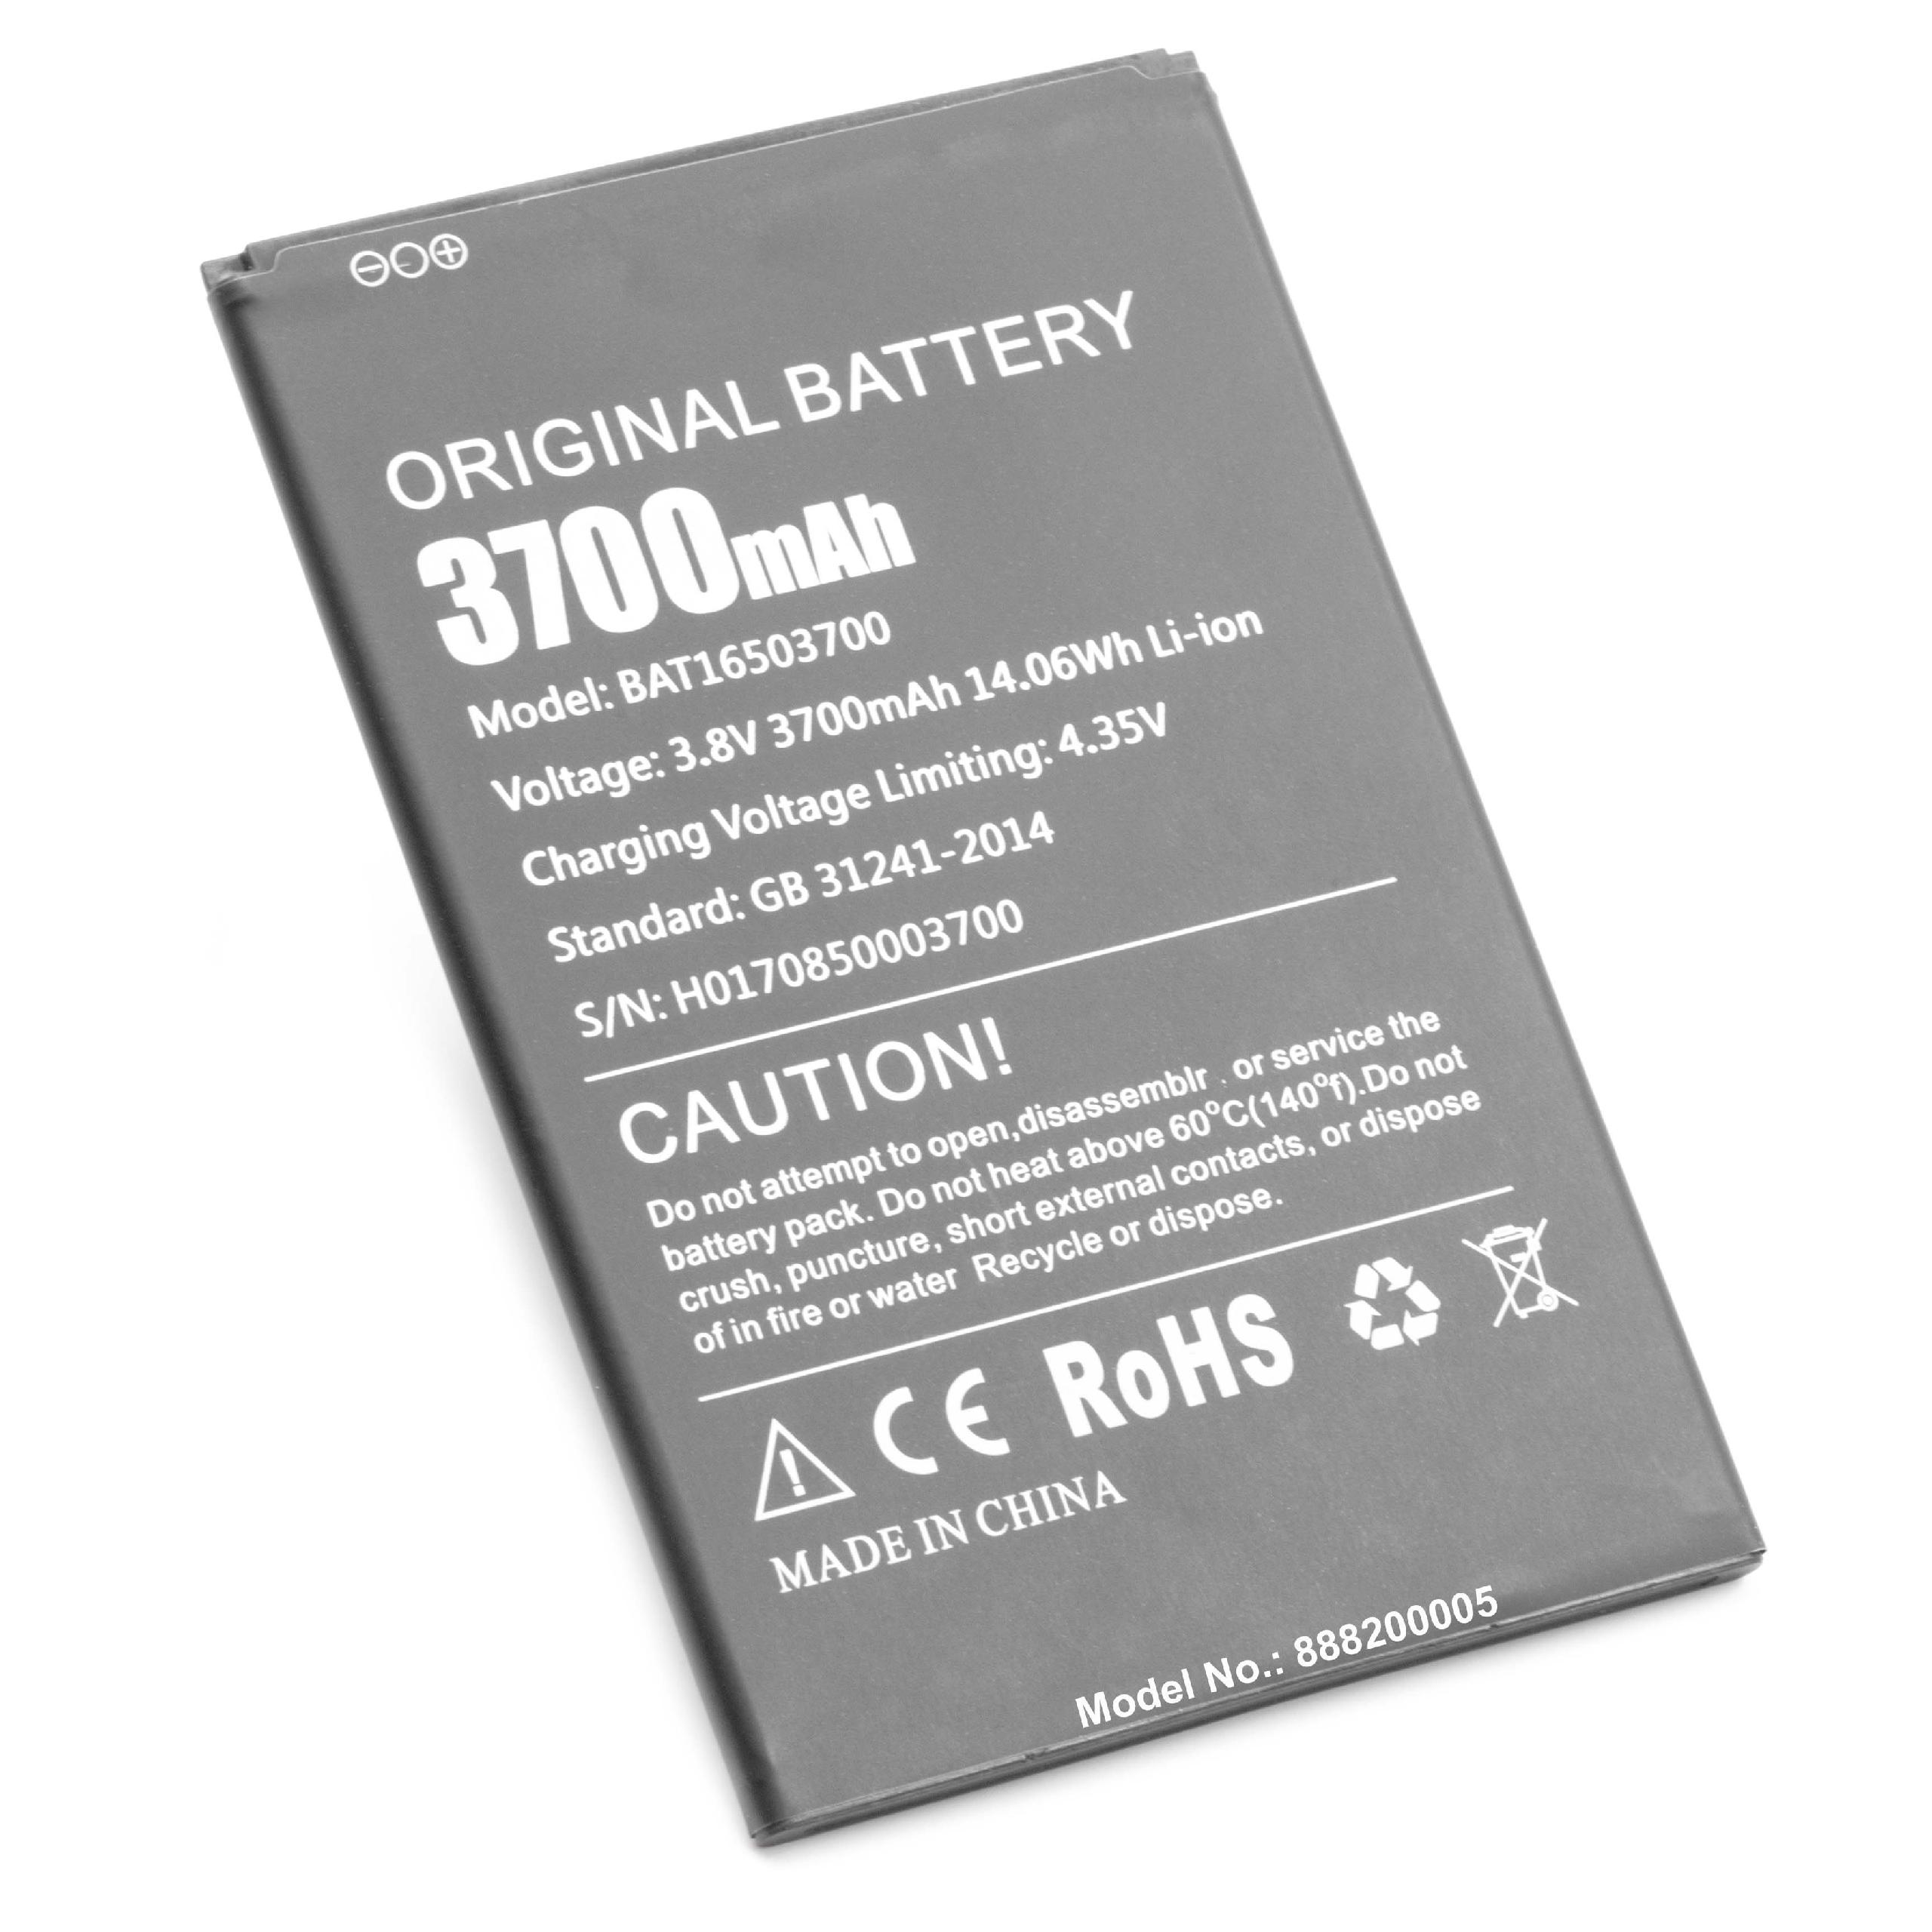 Batterie remplace Doogee BAT16503700 pour téléphone portable - 3700mAh, 3,8V, Li-ion